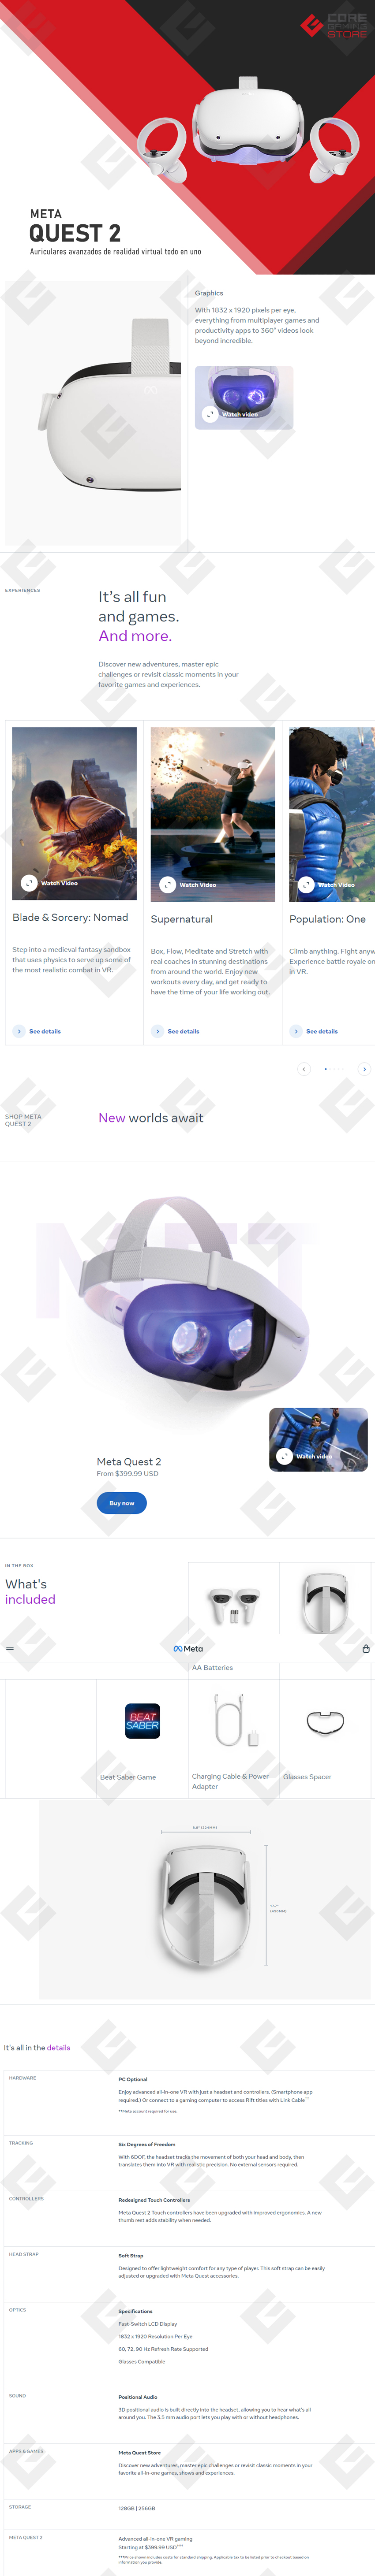 Gafas de realidad virtual Meta Quest 2 128GB - Gafas VR